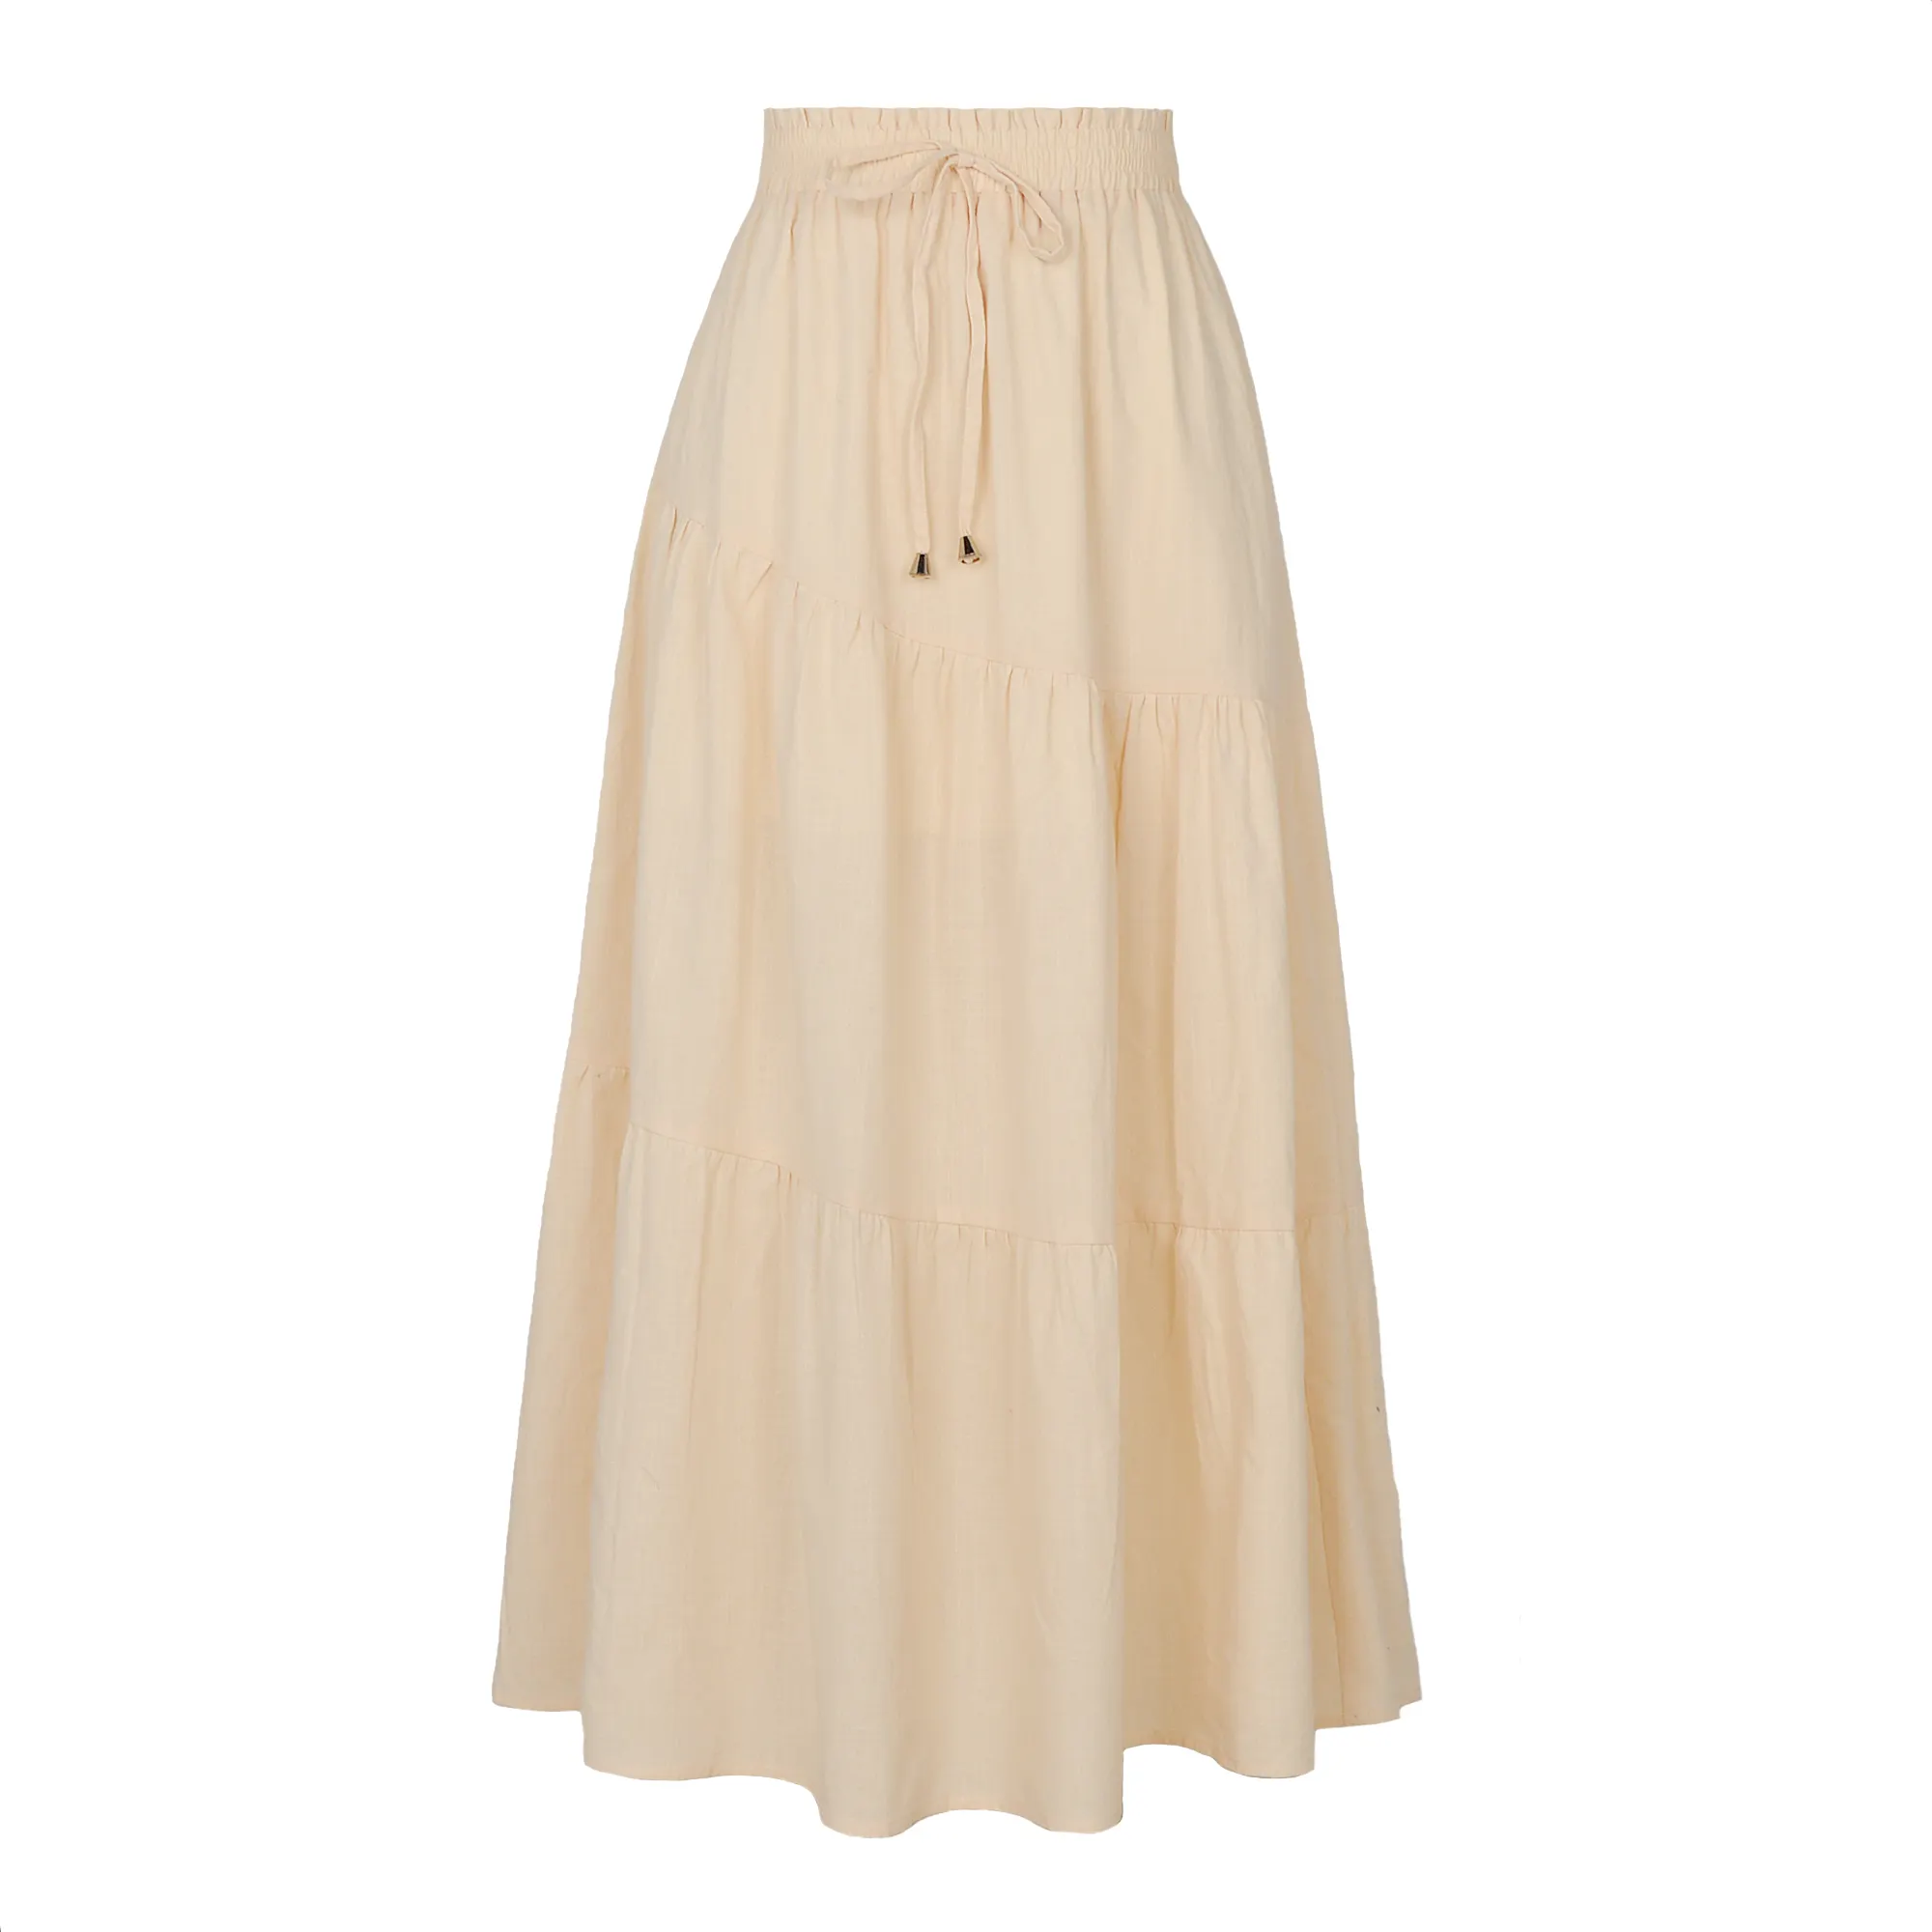 Boutique High Waist Half length Skirt Solid Cotton Hemp Elastic Waist Large Fold Skirt for Women